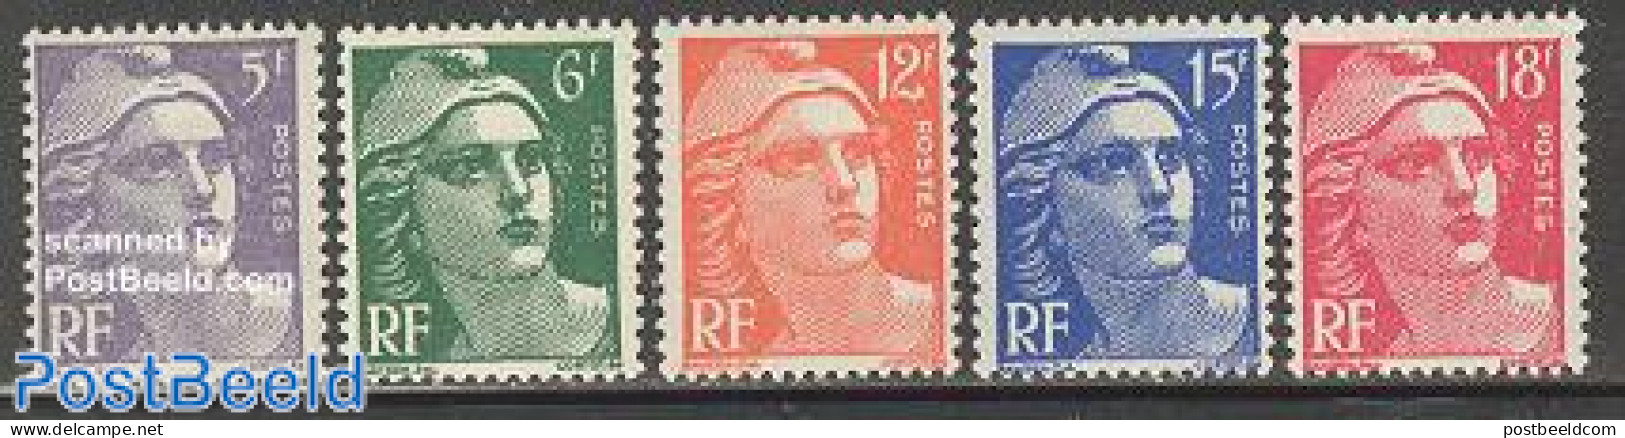 France 1951 Definitives 5v, Mint NH - Unused Stamps